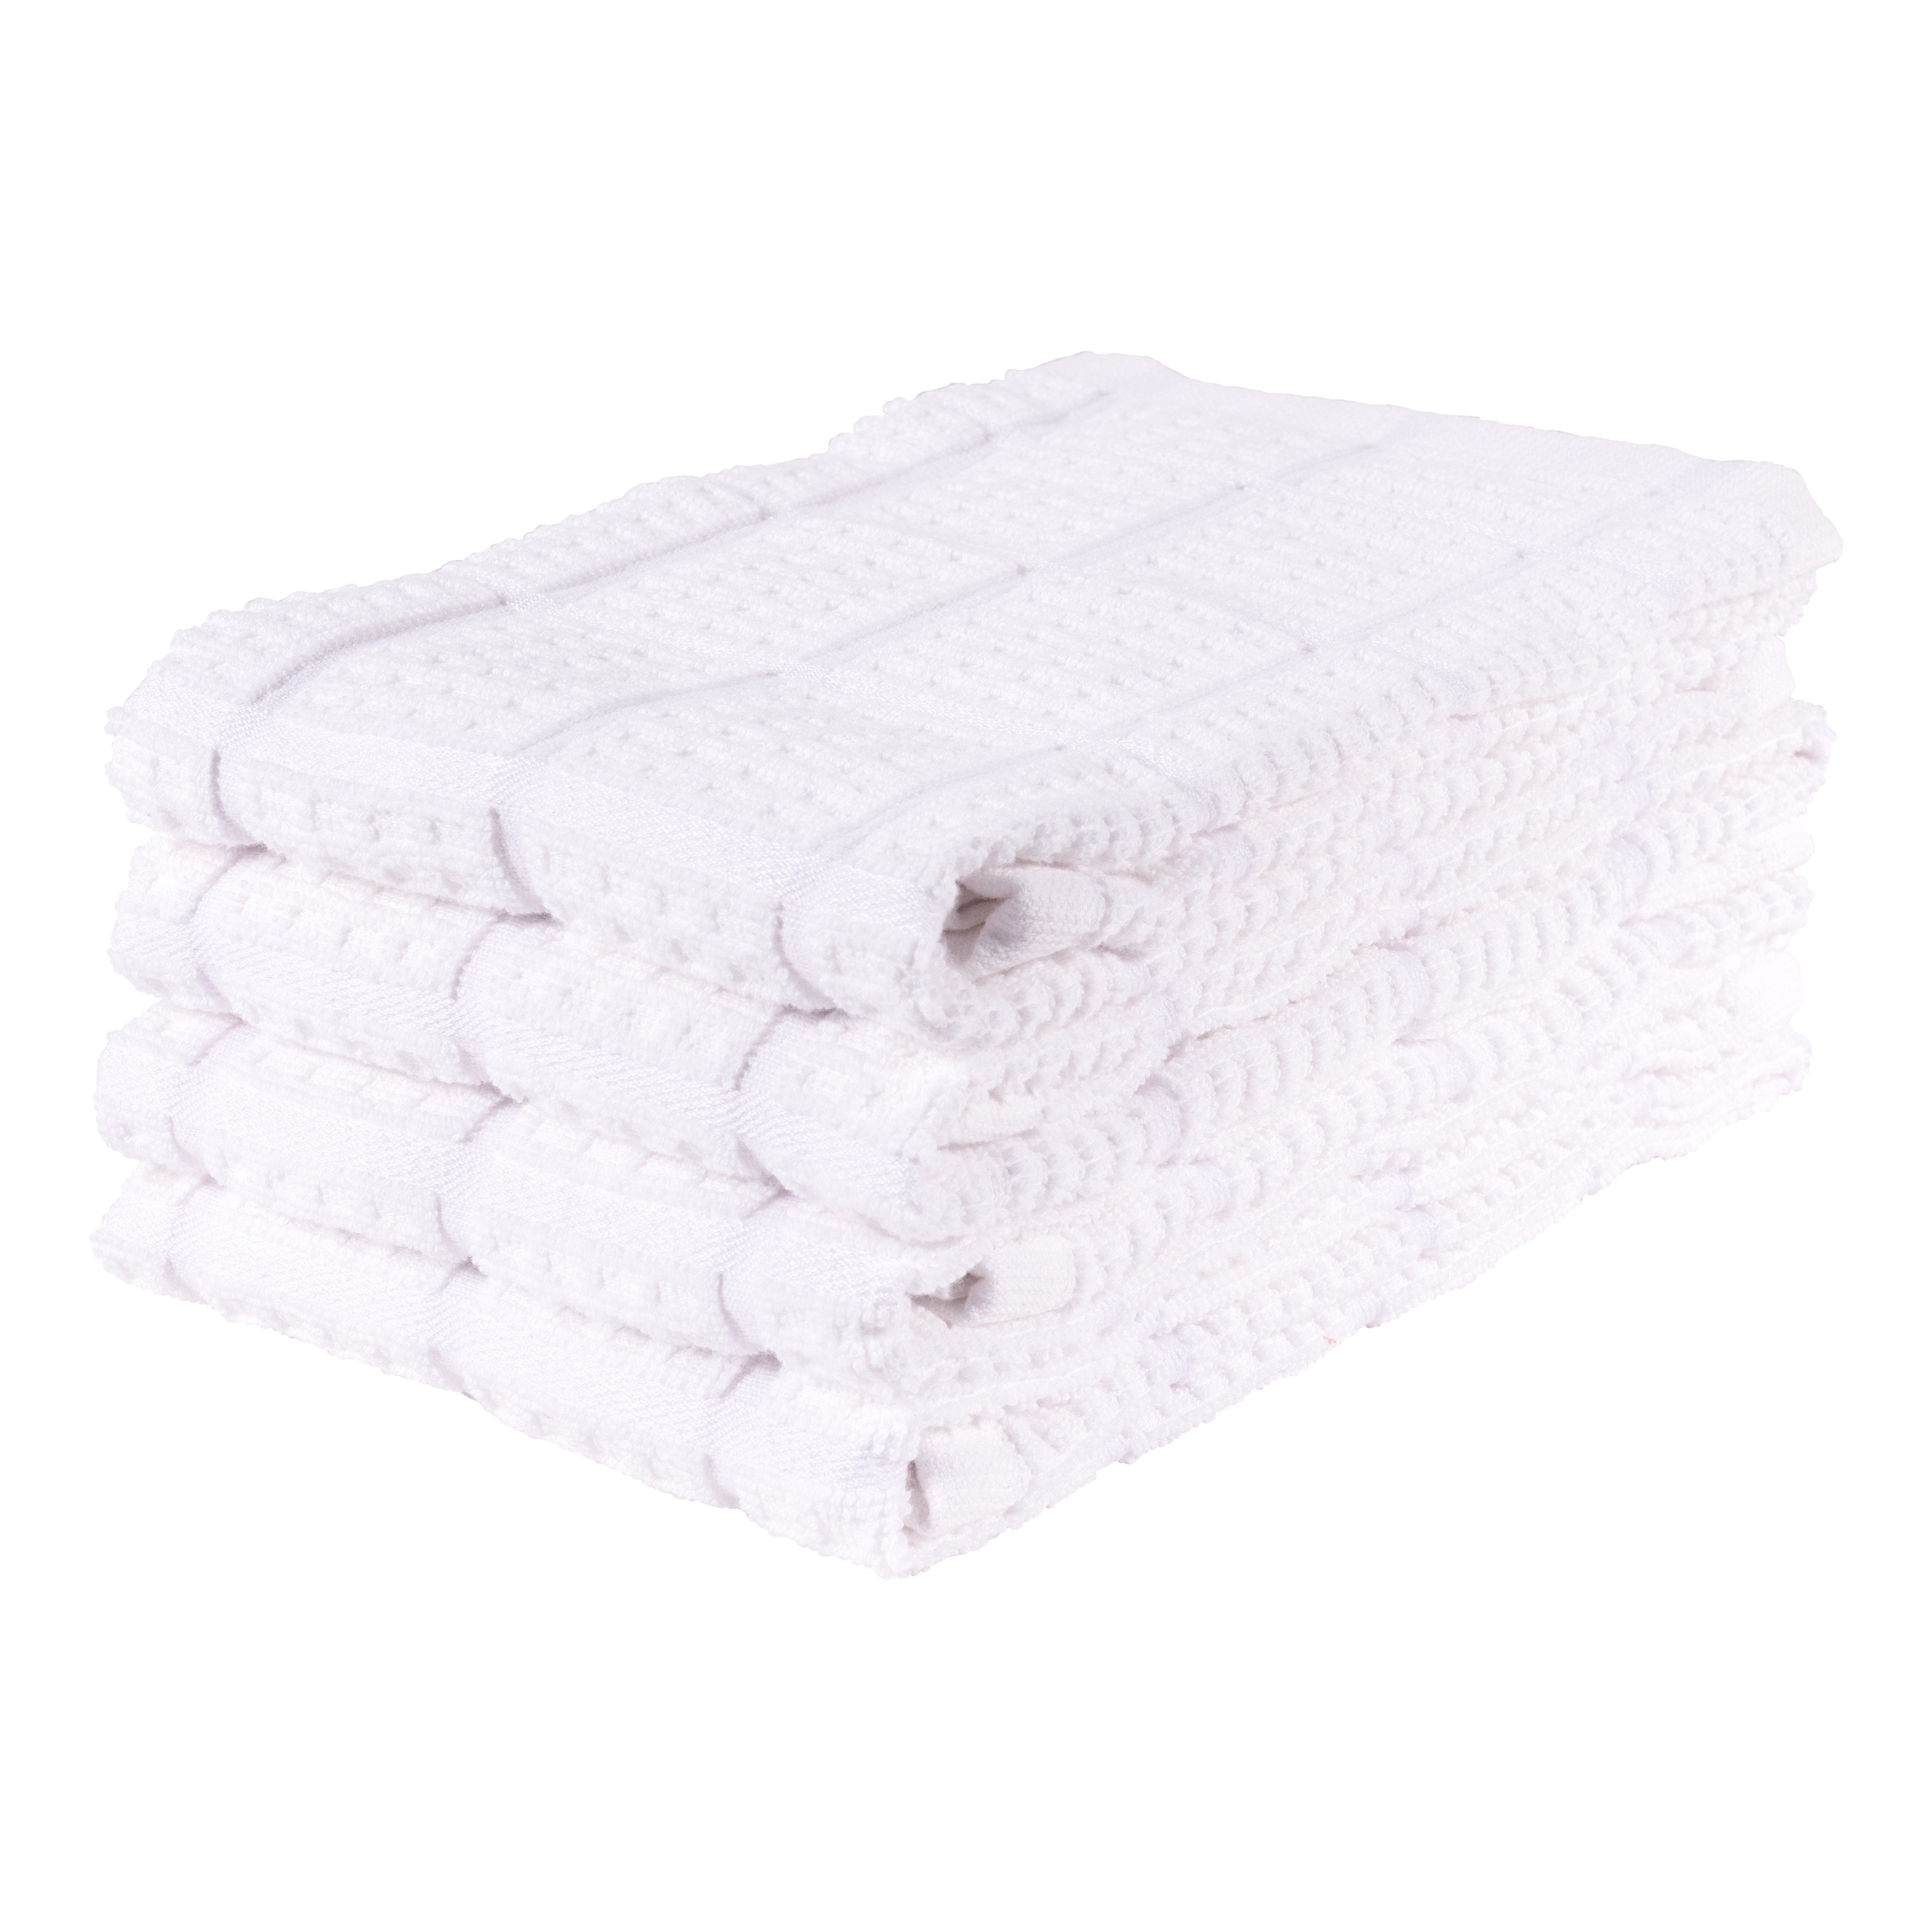 Set of 10 Dish Towel Bridesmaid Gifts Small Bath Towels 